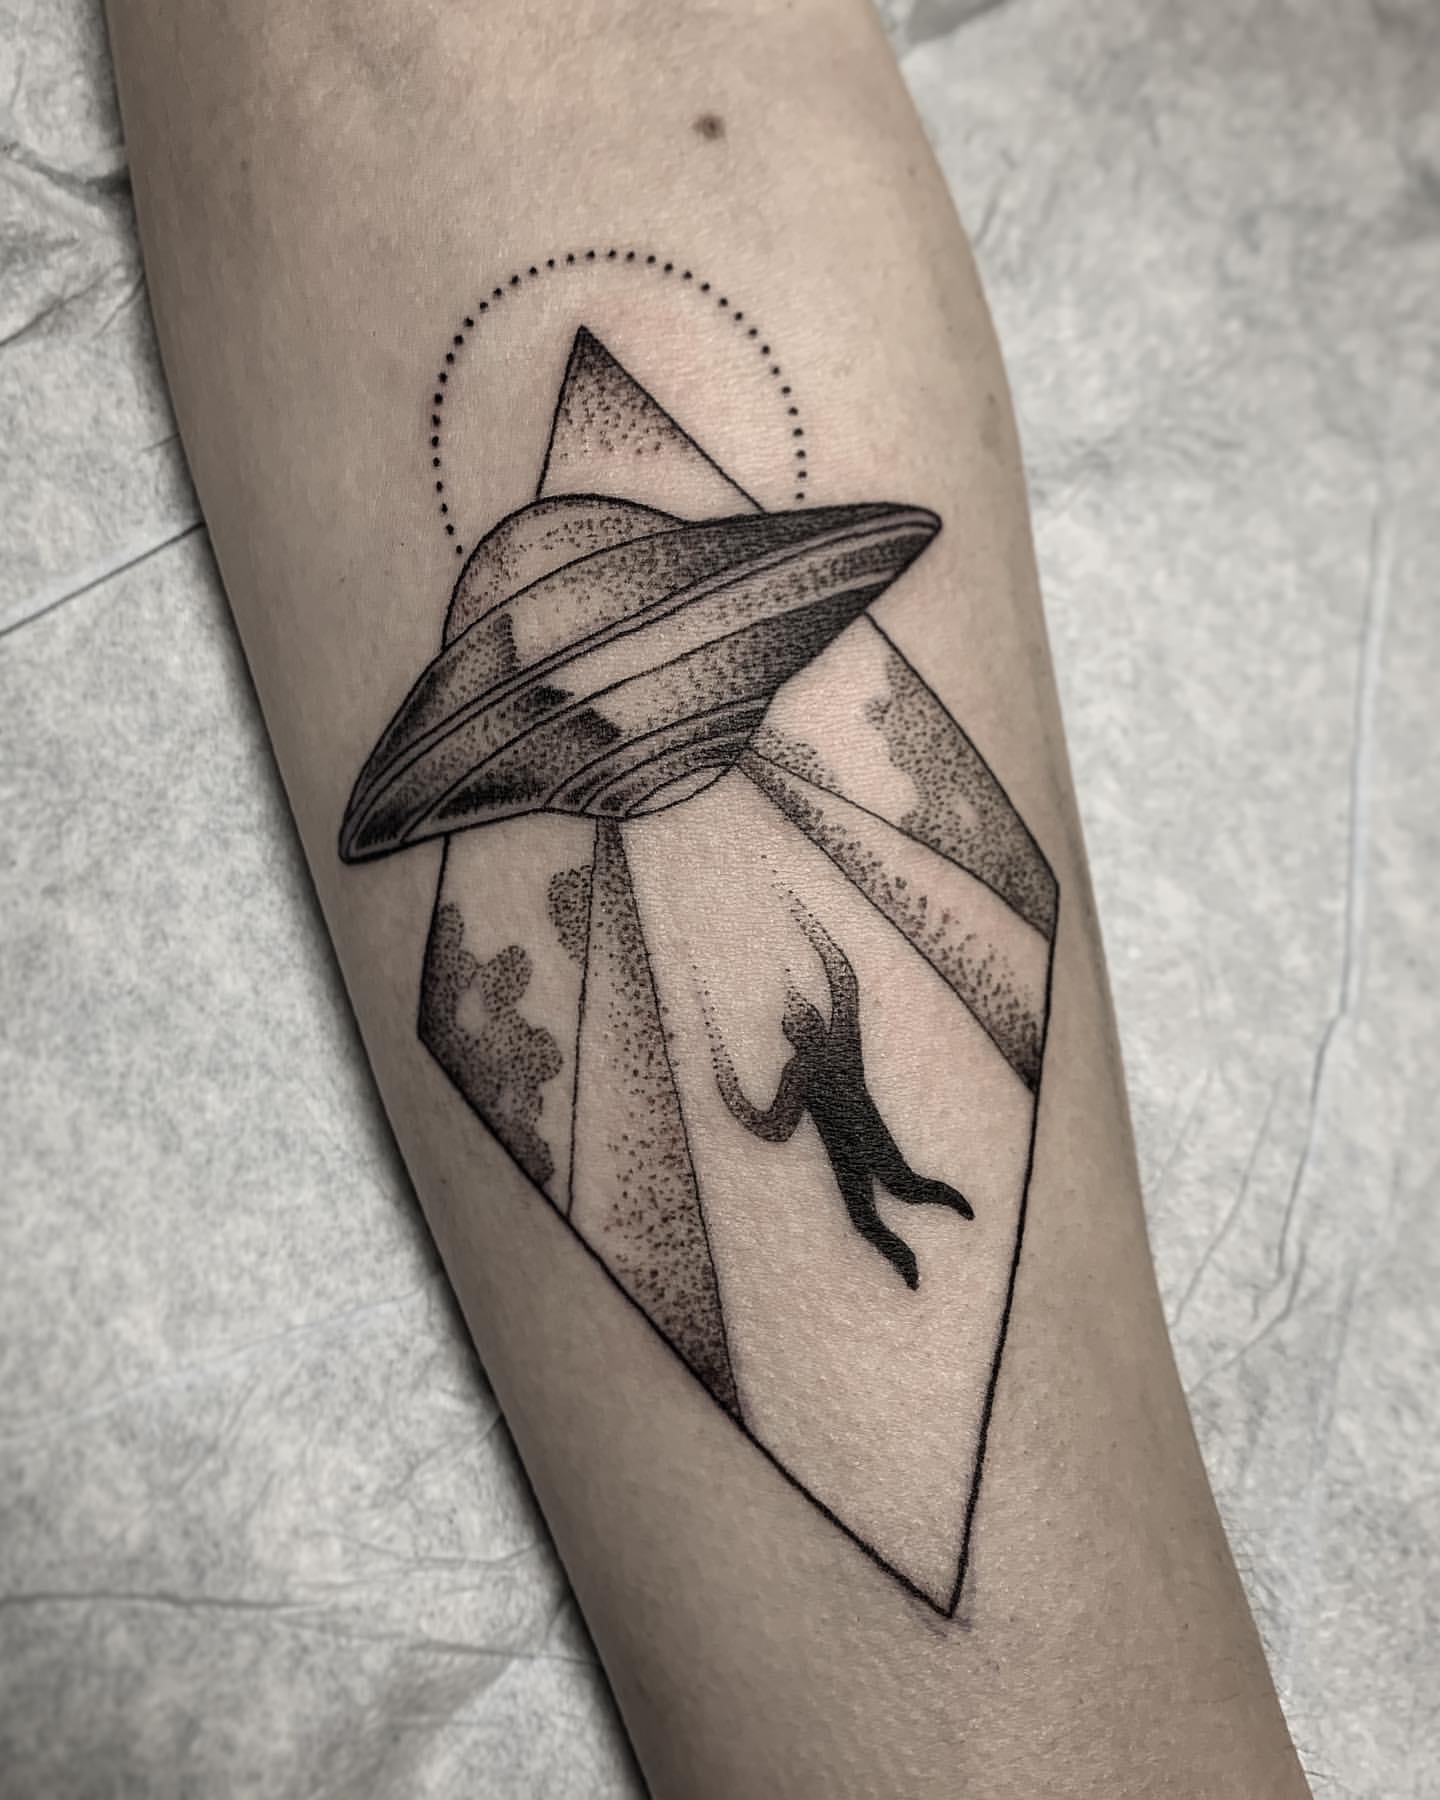 Spaceship Tattoo Ideas 6